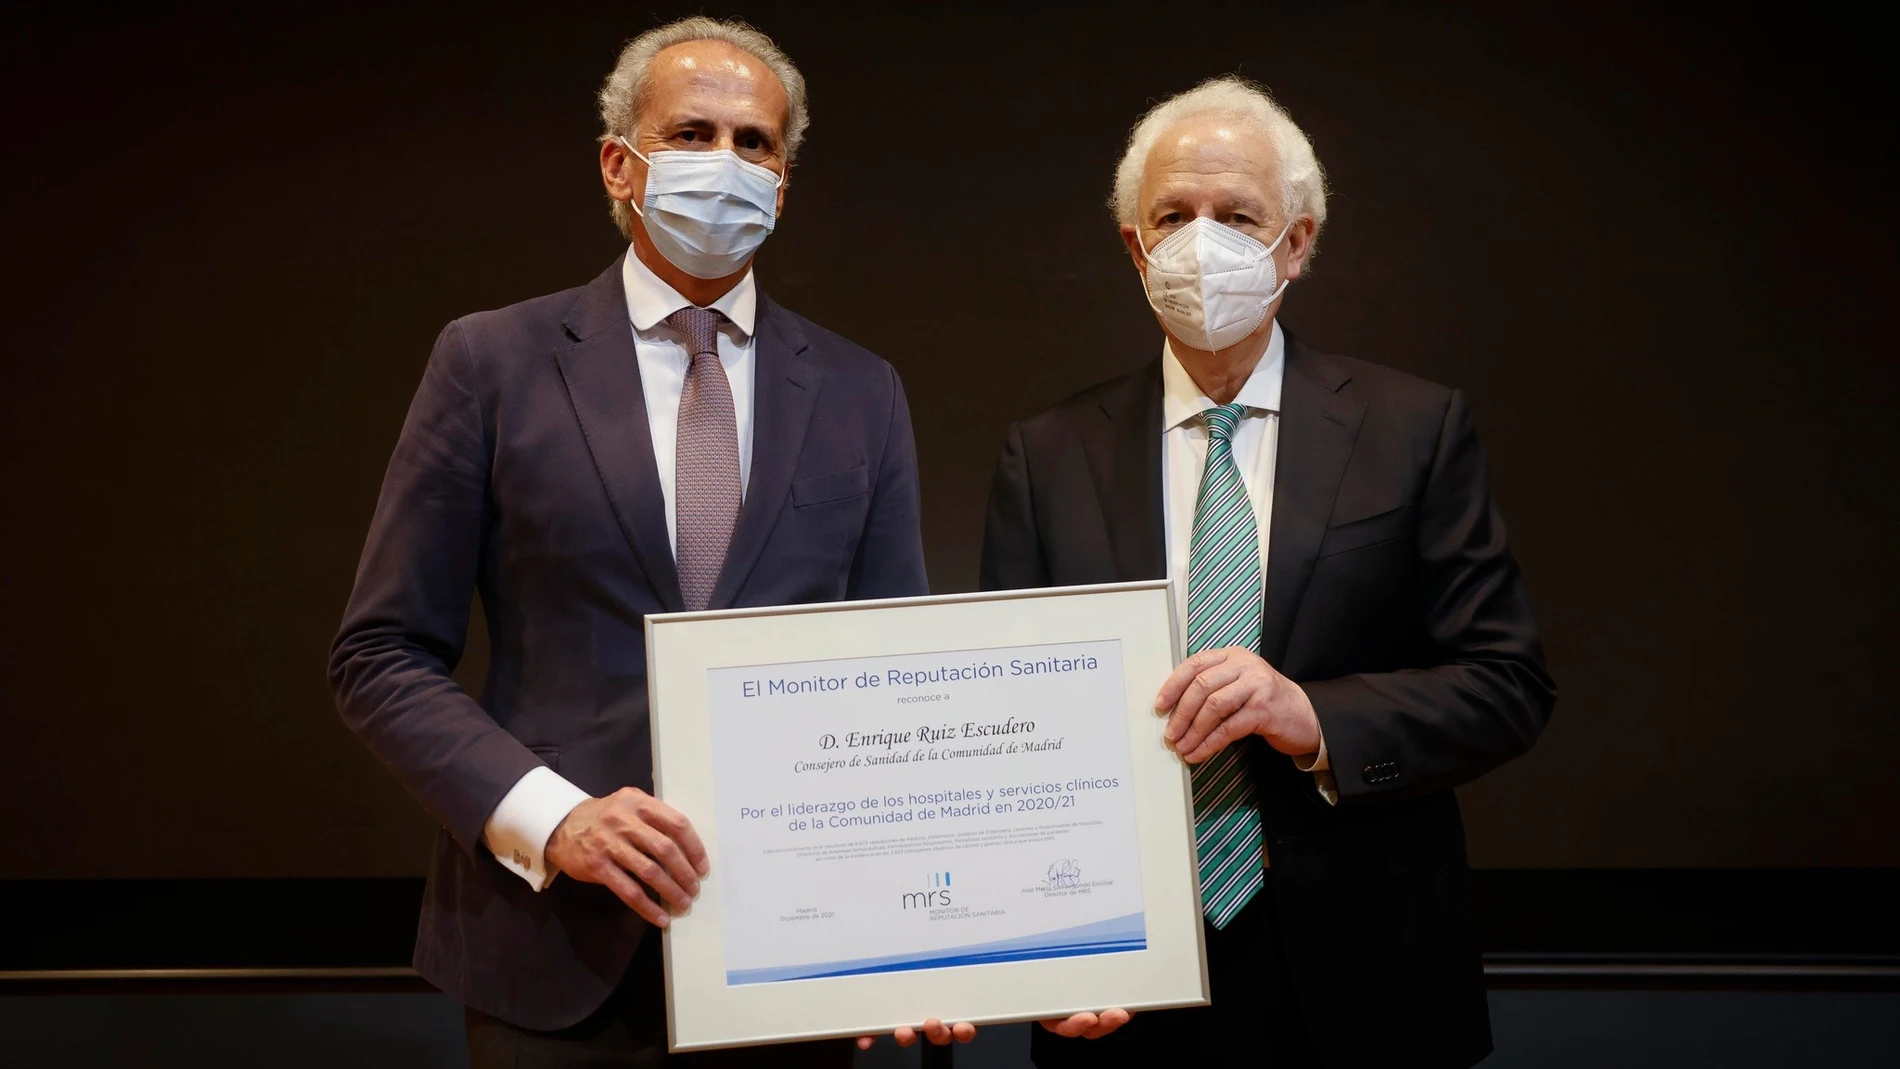 El consejero de Sanidad de la Comunidad de Madrid, Enrique Ruiz Escudero, recibe el diploma de Monitor de Reputación Sanitaria